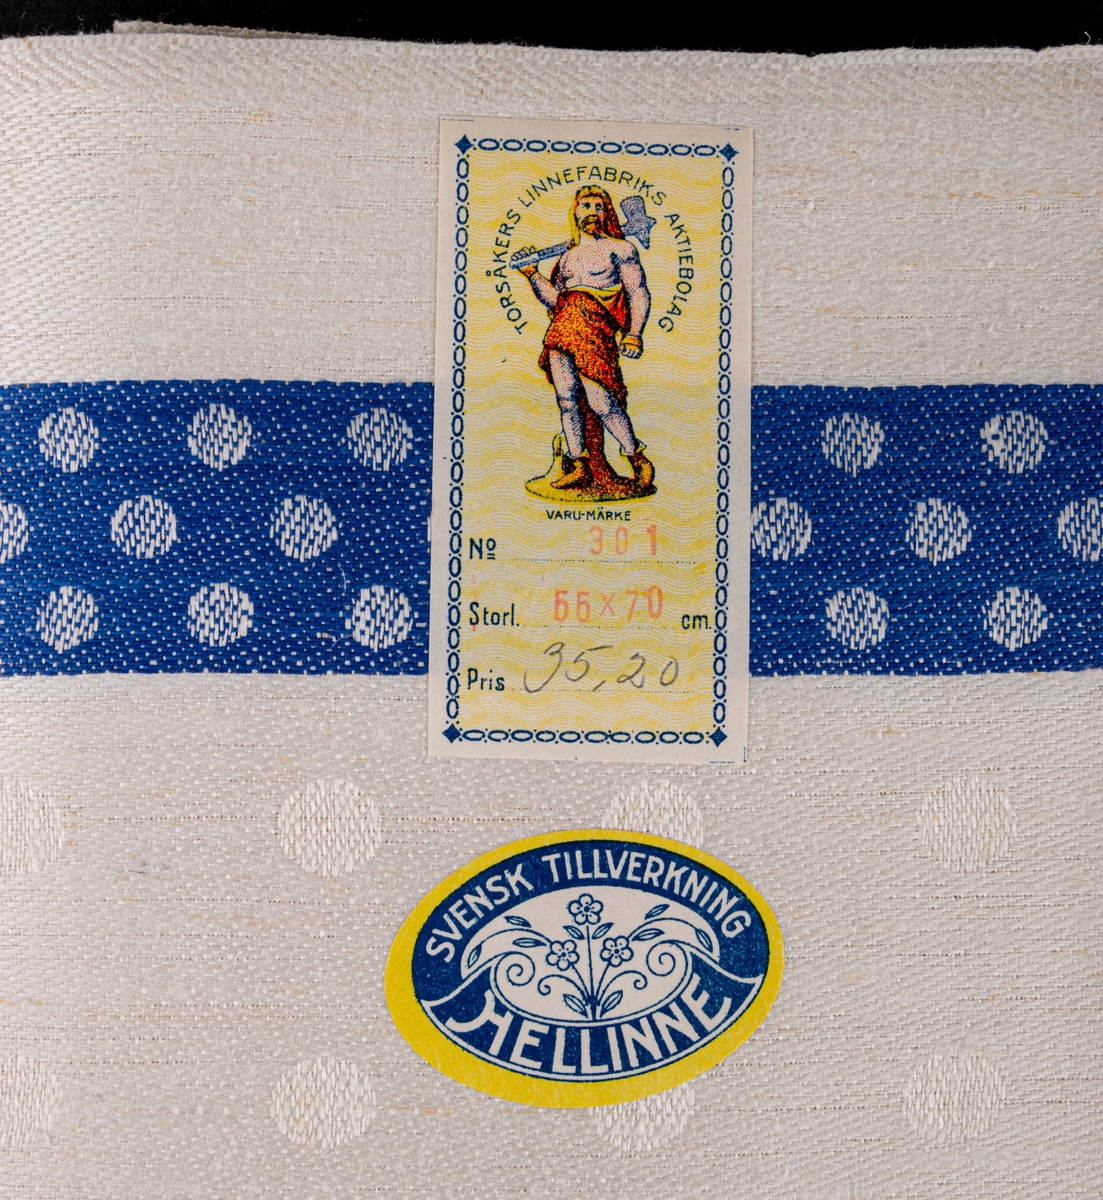 Oklippt, maskinvävd handduksväv av hellinne tillverkad vid Torsåkers linnefabriks aktiebolag. Vävd i tuskaft med naturfärgad botten med blåa effektränder. Försedd med pappersetiketter med tillverkarens emblem.